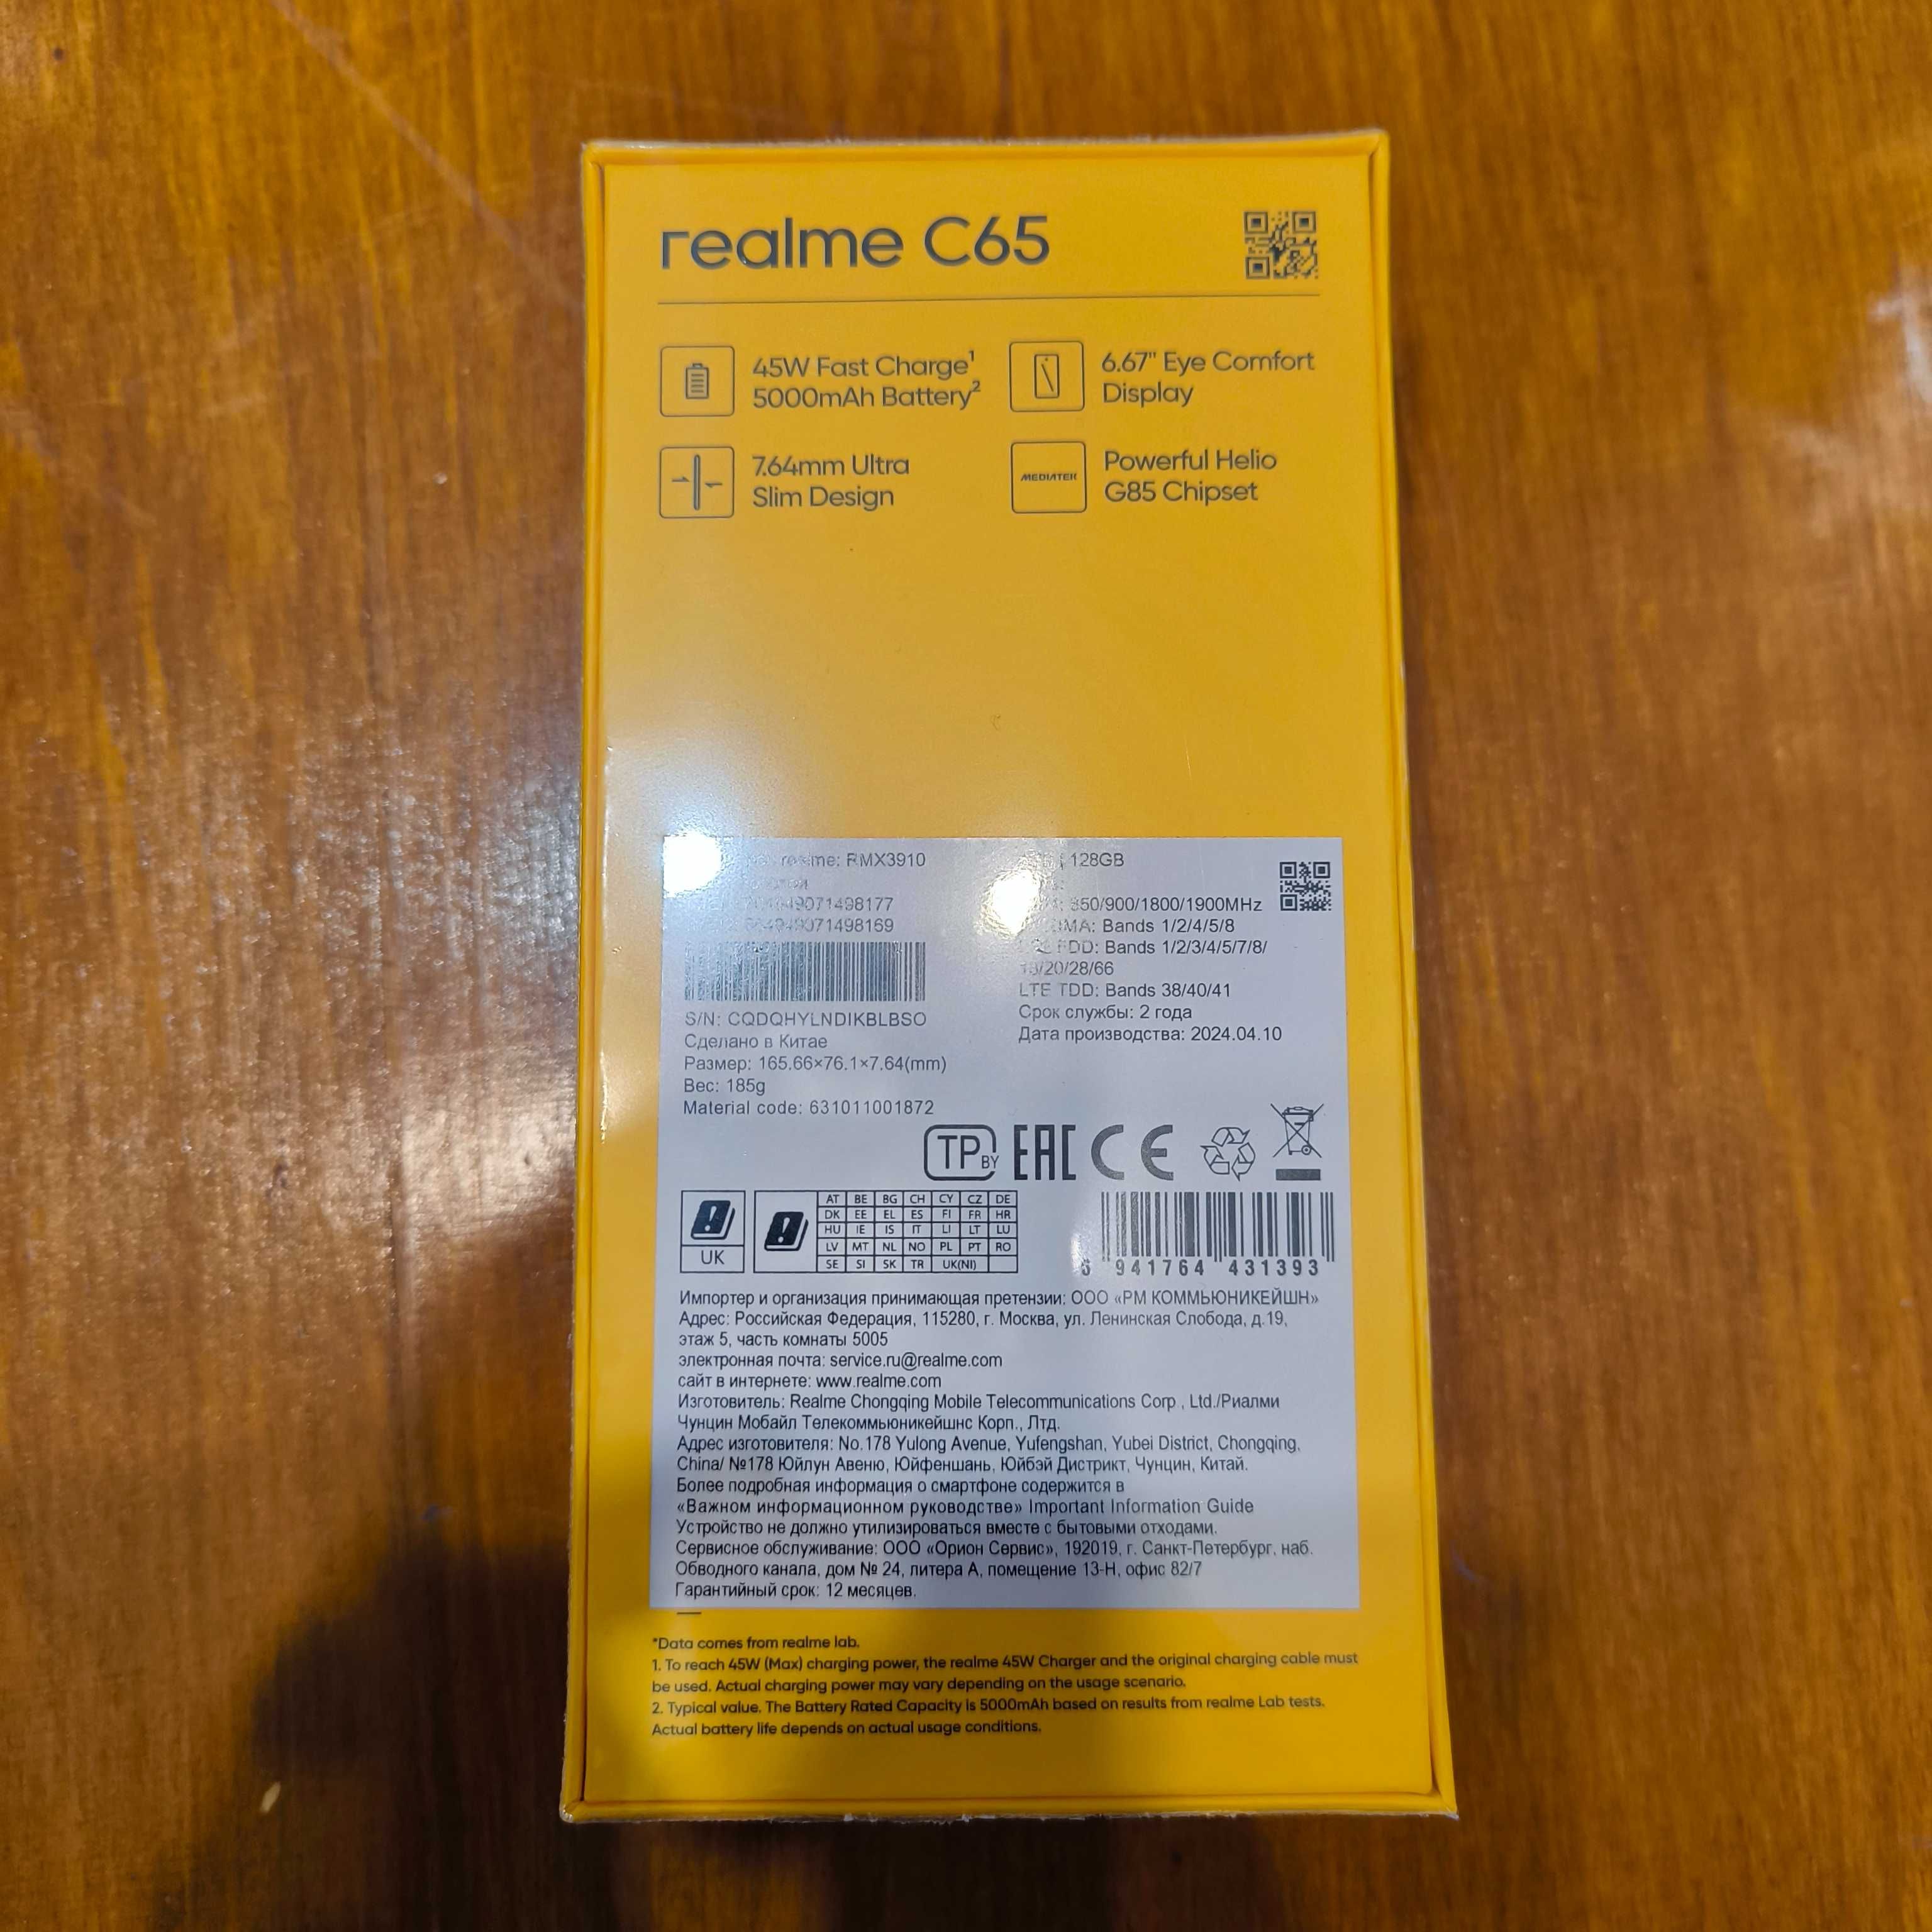 НОВЫЙ Смартфон Realme C65 NFC 6/128 ГБ Глобальная Версия